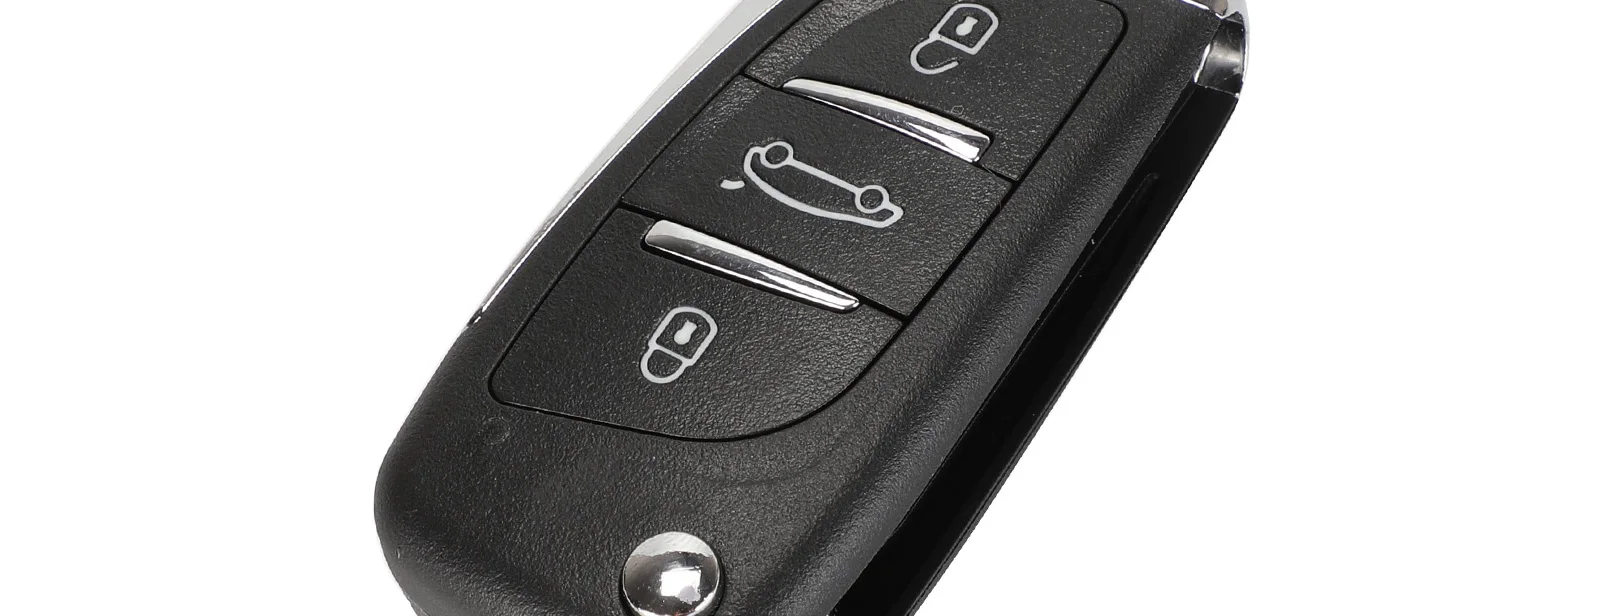 Kutery 3 кнопки дистанционного управления для SSANGYONG ключ с электроникой 433 МГц Actyon Kyron Rexton, Korando Uncut Blade ключи для автомобиля